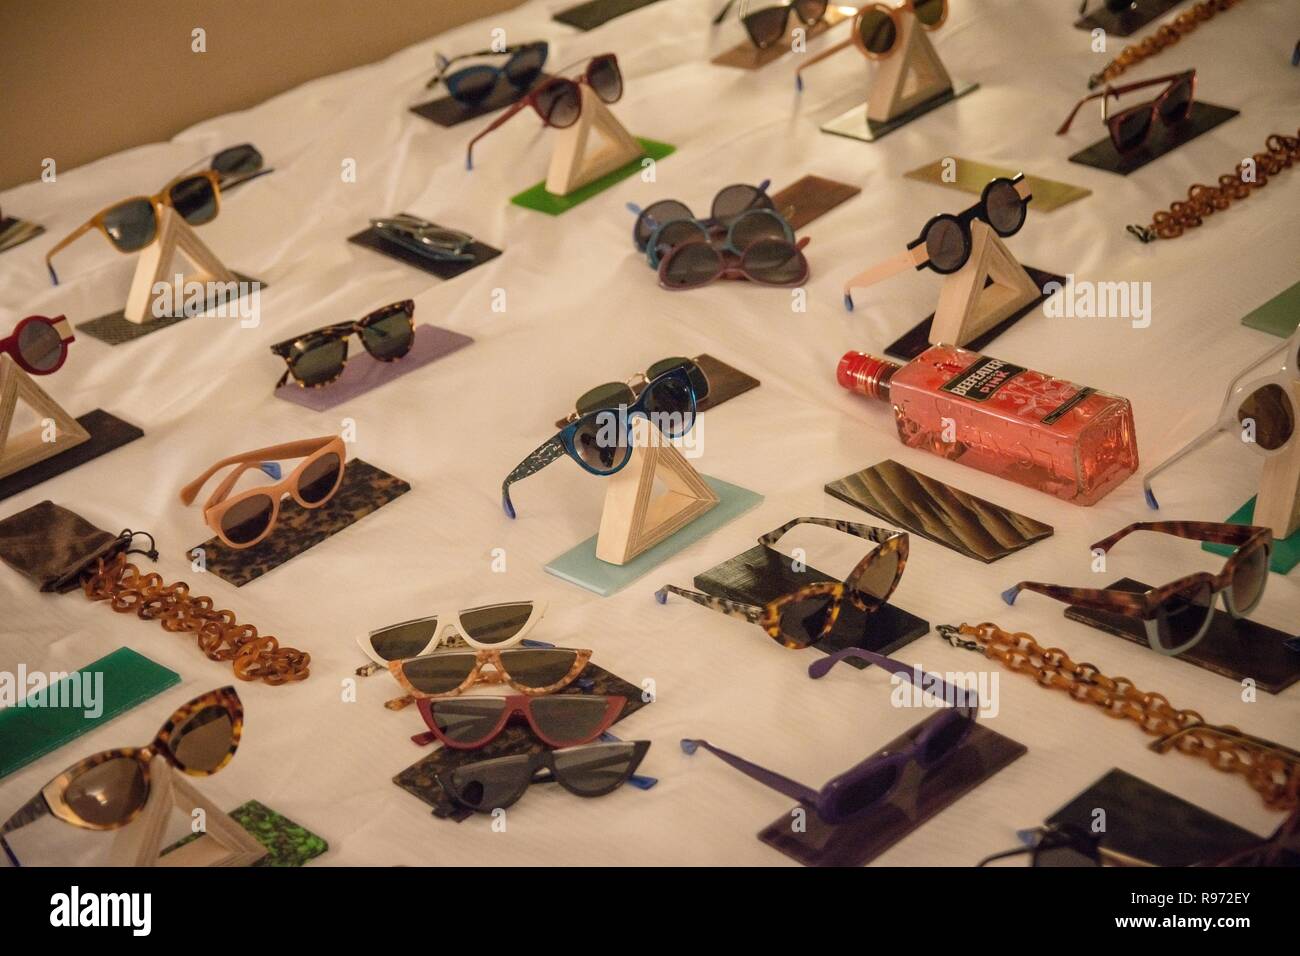 Collection de verre soleil vu pendant l'événement. Plus de 30 créateurs de mode de partout dans le monde, présentent leurs nouvelles collections au Hilton hotel dans le centre d'Athènes, Grèce. Certains d'entre eux sont FILA, LUV N Roll, HERAIS, théâtre D. ET LINDA CRUZ. Banque D'Images